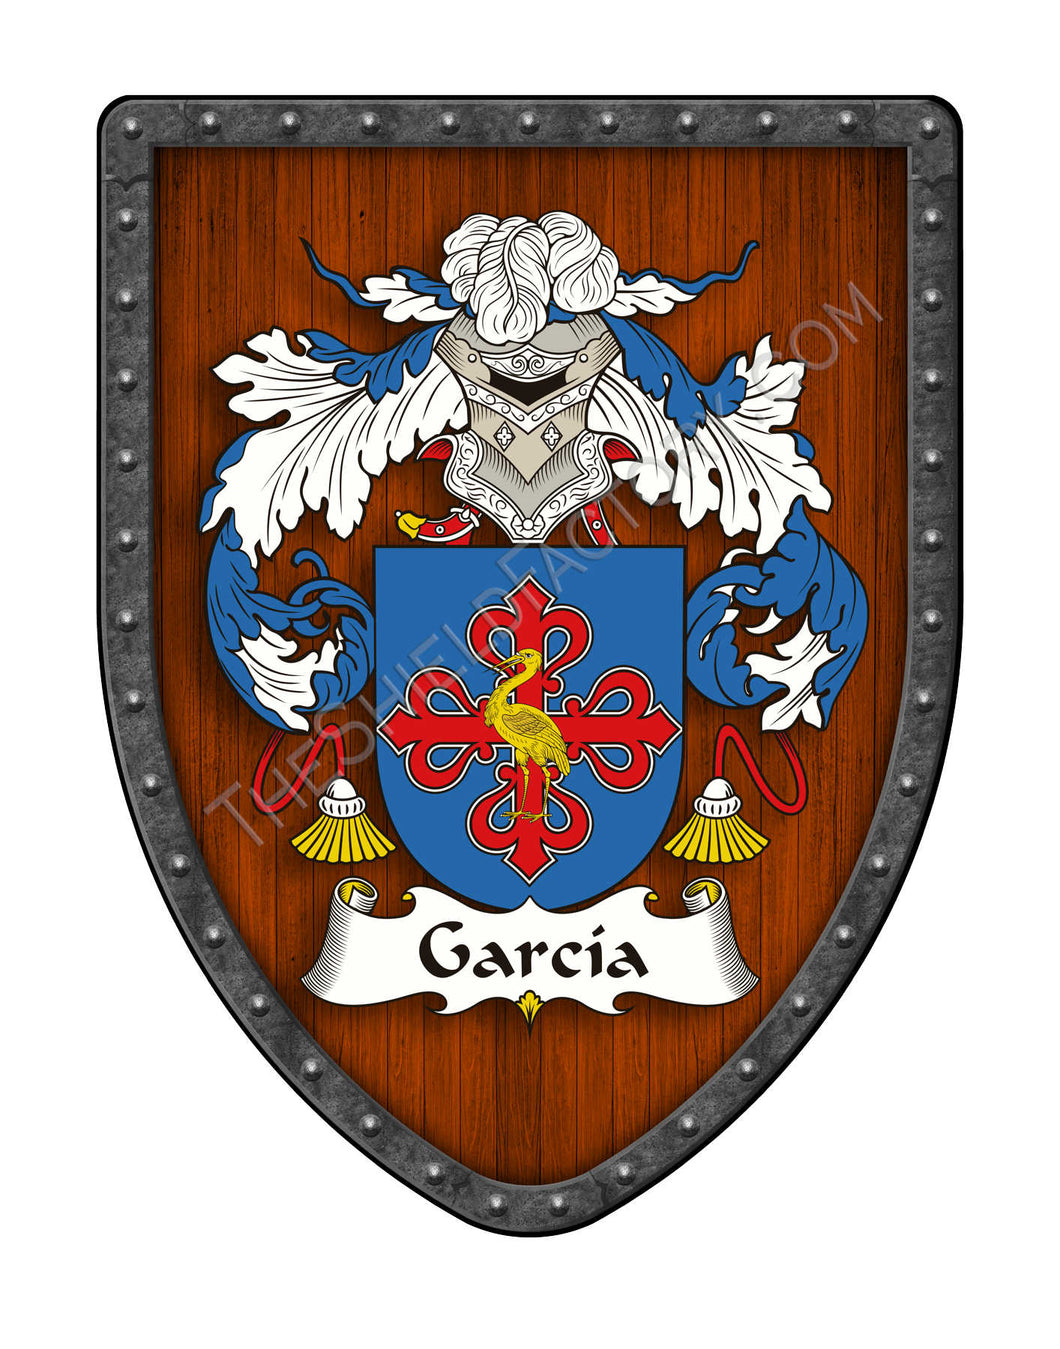 García II Coat of Arms Shield